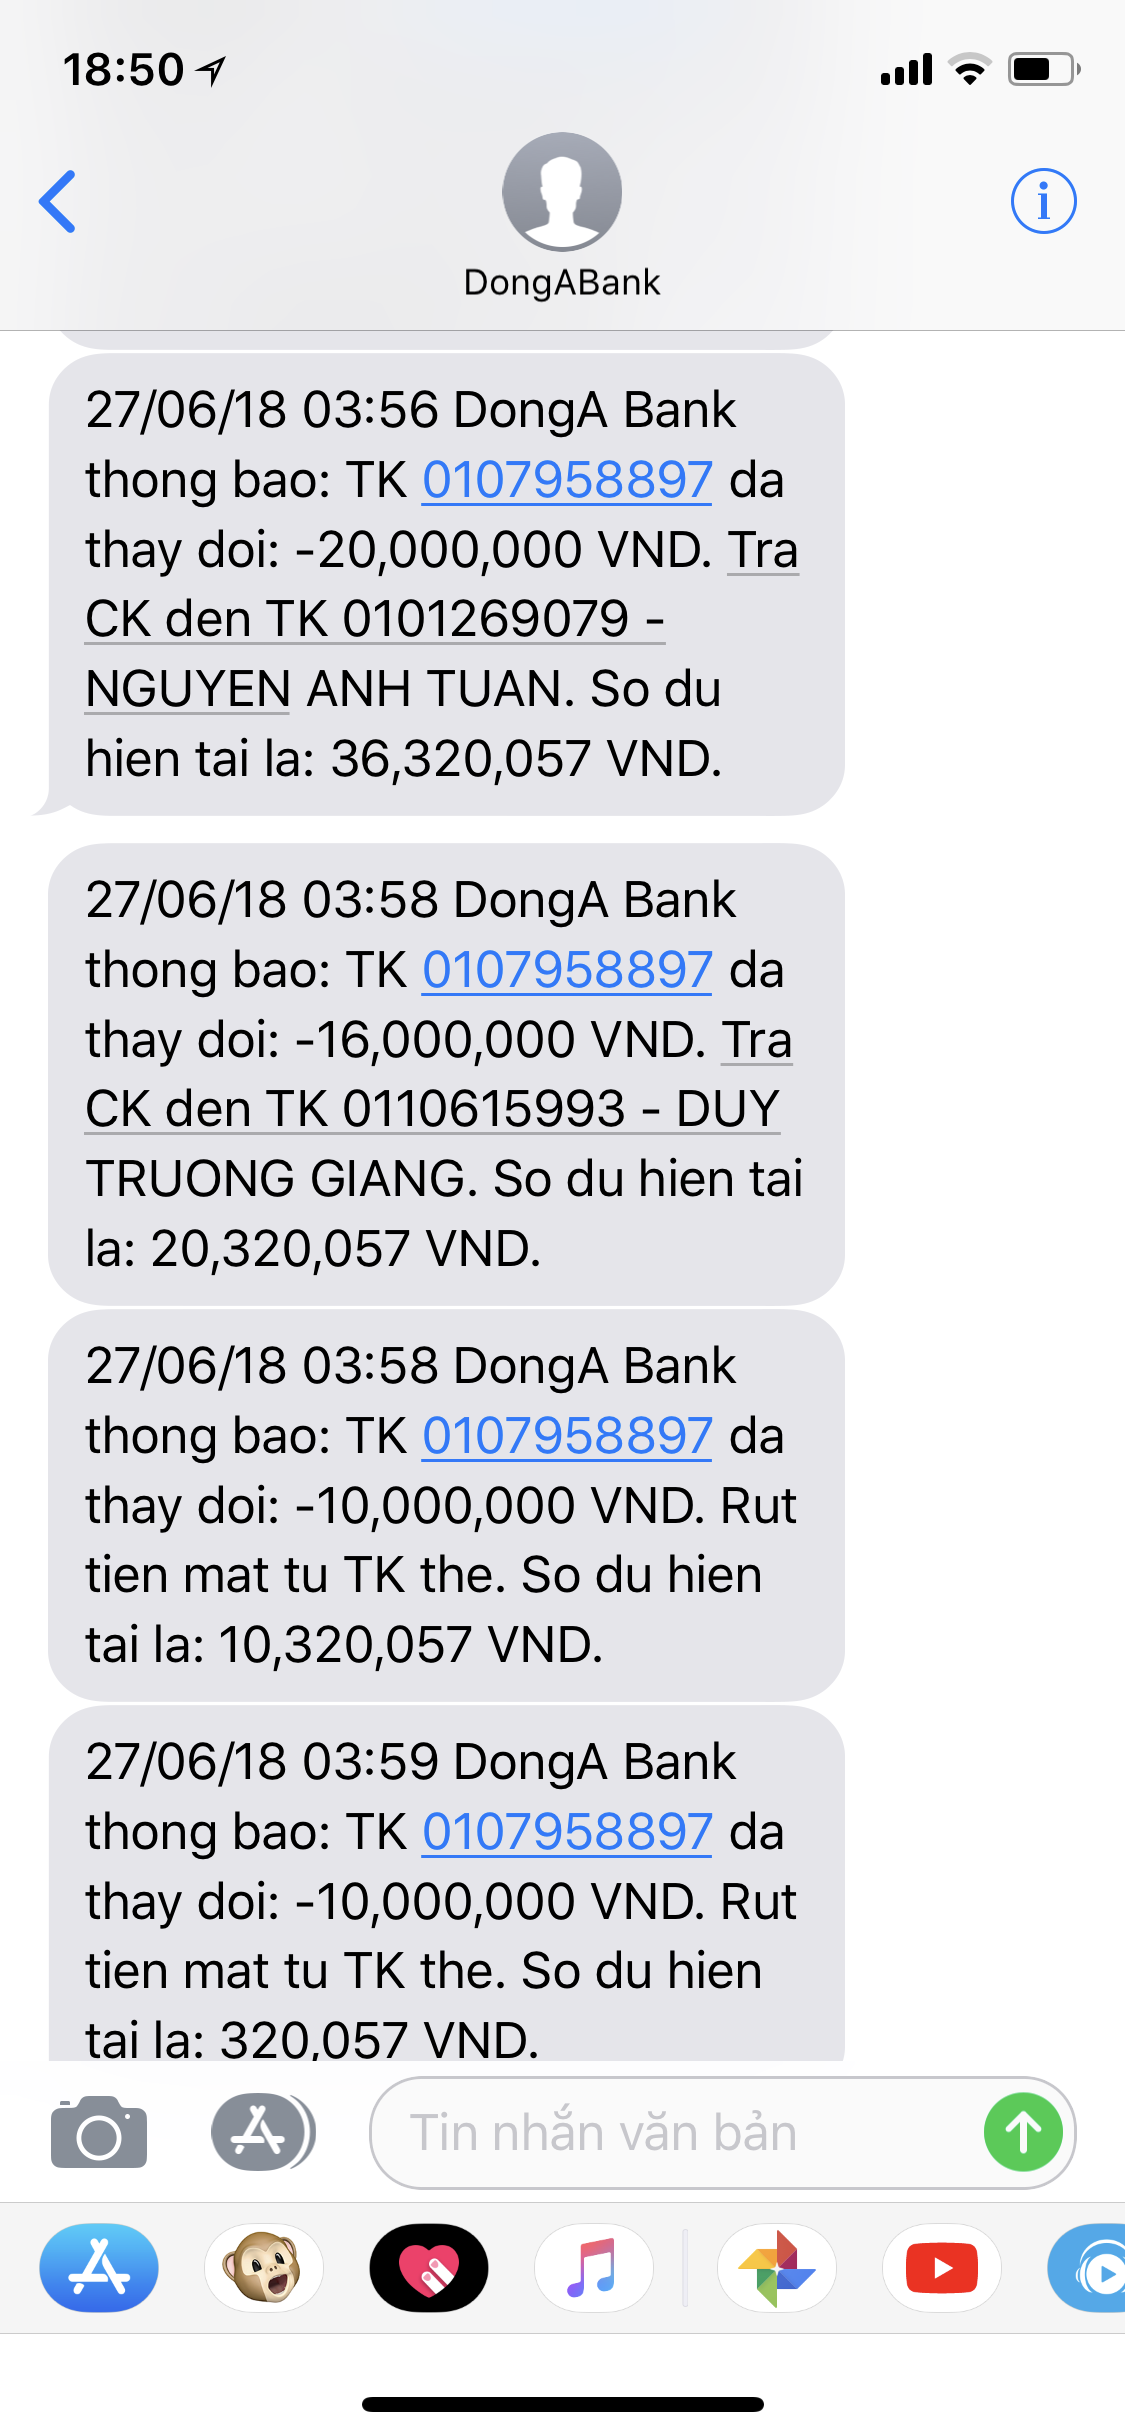 Đến với Đông Á Bank, bạn sẽ được trải nghiệm dịch vụ chuyên nghiệp và tiện ích tuyệt vời cho các giao dịch tài chính. Những hình ảnh liên quan đến DongA Bank sẽ khiến bạn cảm thấy yên tâm và tin tưởng hơn về ngân hàng của mình.